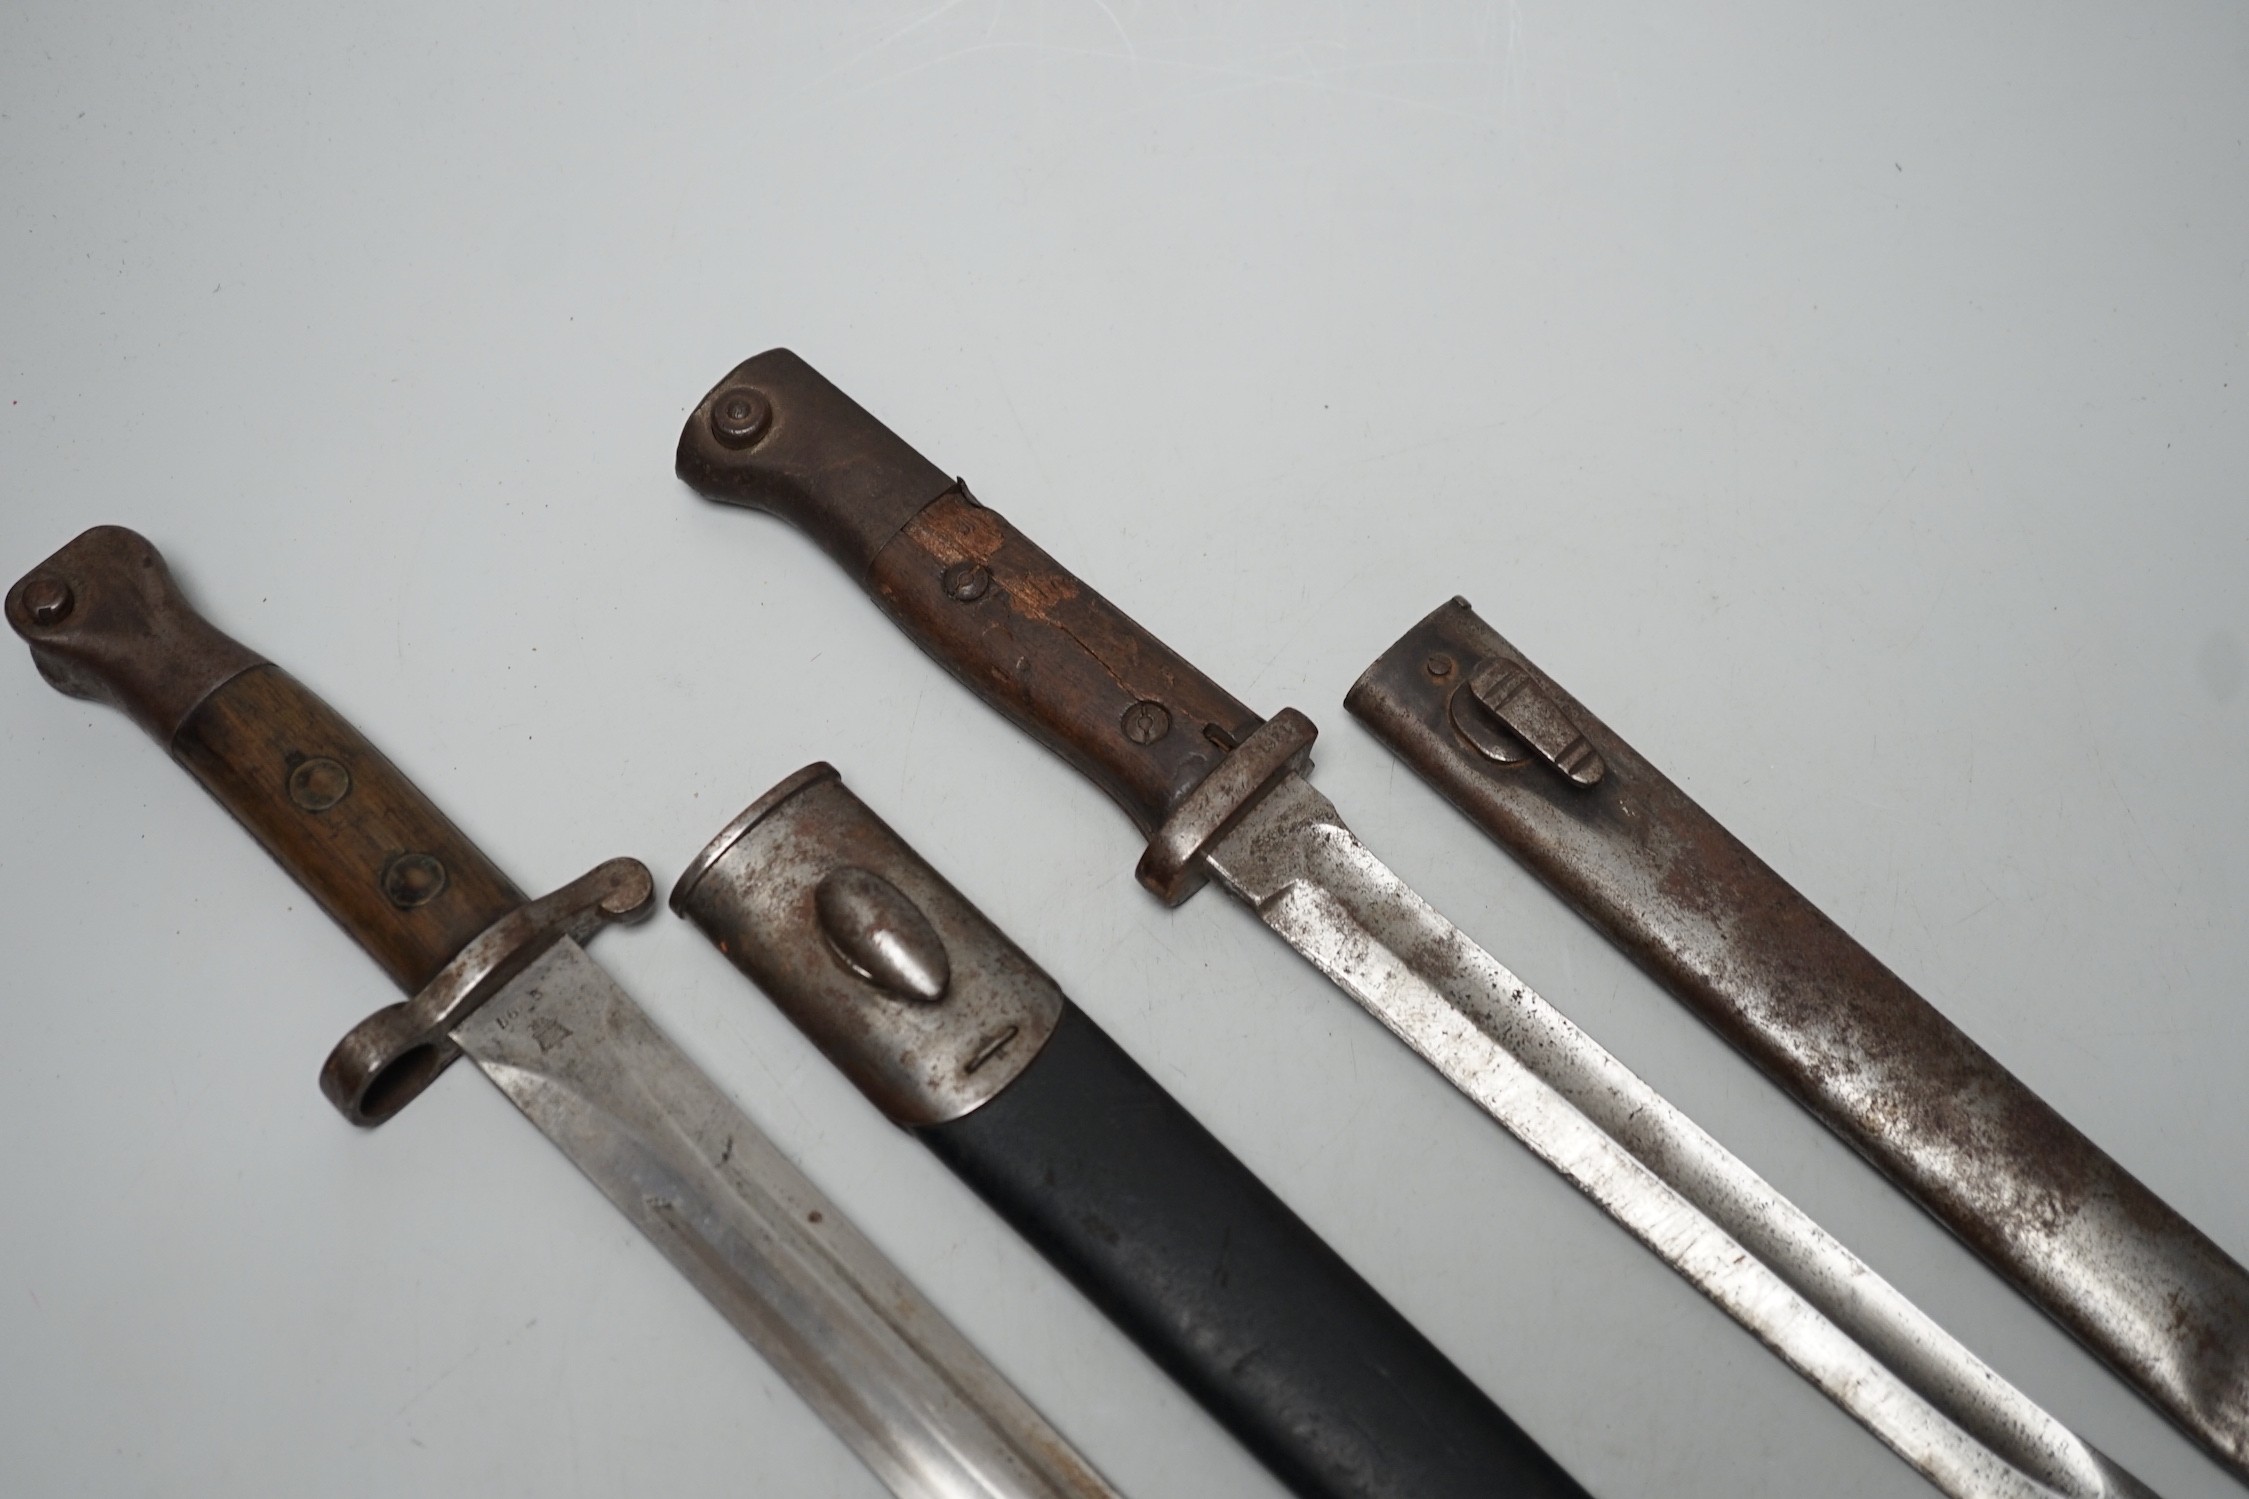 A 19th century British bayonet and scabbard together with a German bayonet and scabbard, the blade stamped Gottlieb Hammesfahr Solingen Foche